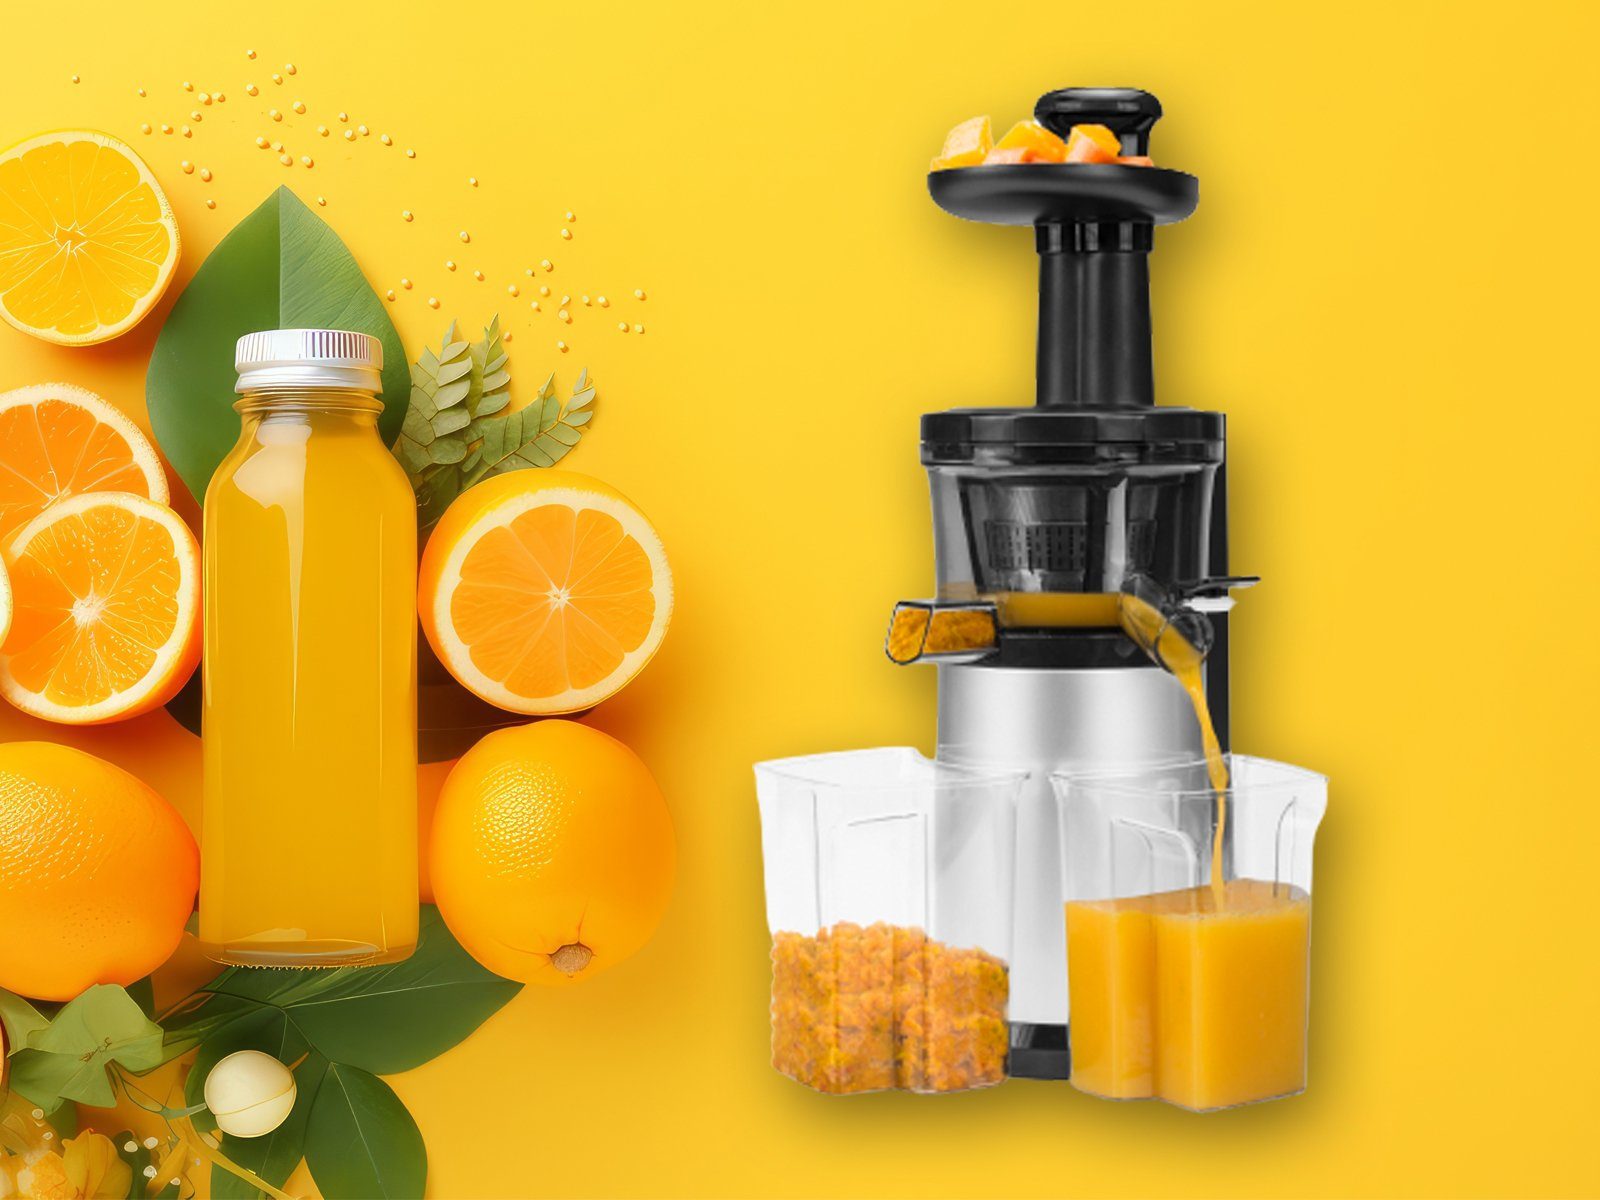 Frucht & Gemüsesäften und 150 Entsafter, Obst- mit für gesunde Kalt Tristar Orangen frischen eine Vitamin Gemüse, Saftpresse W, Obst Multi Perfekt Juicer Slow Lebensweise